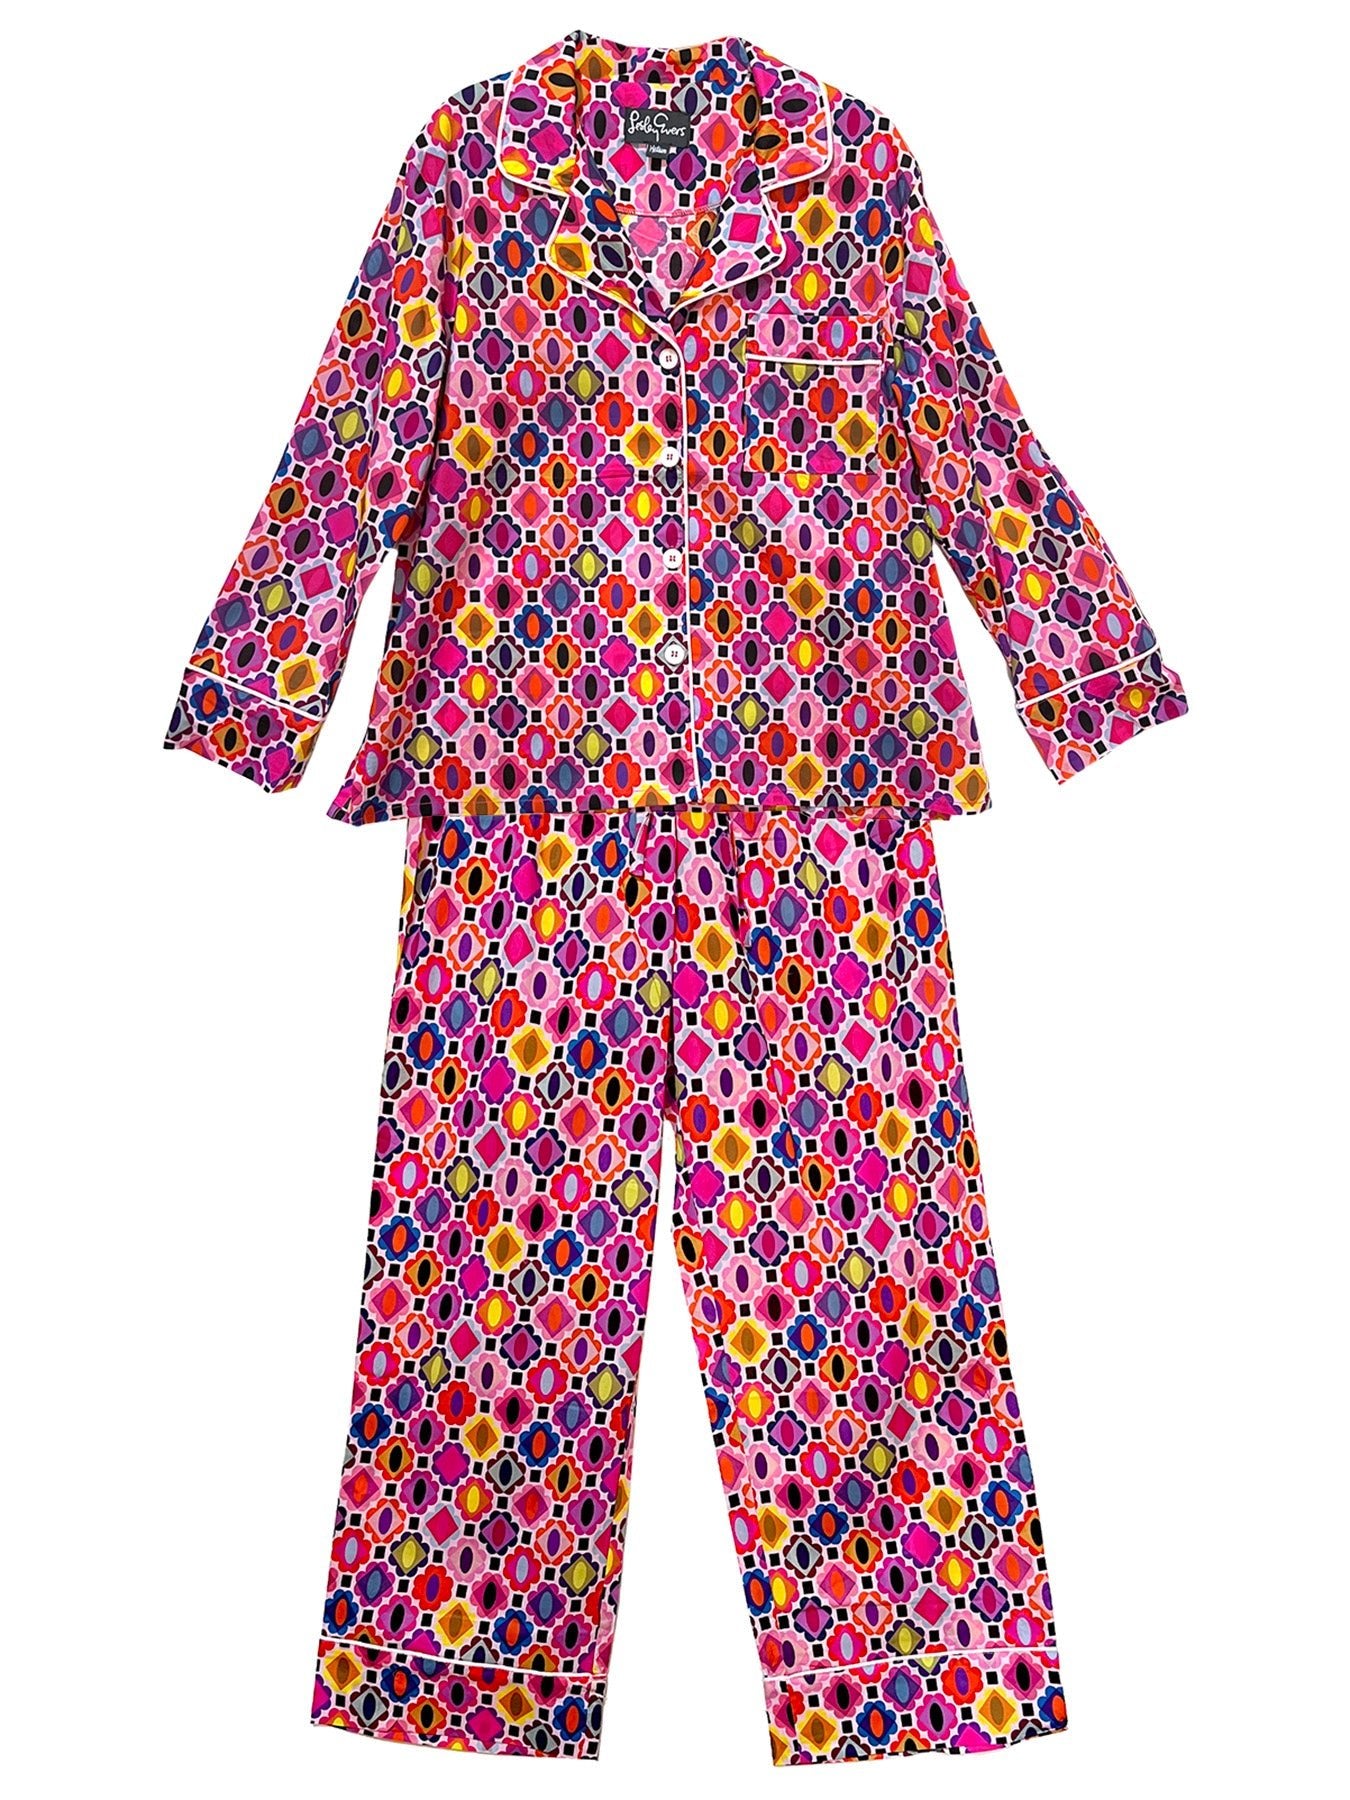 JOSEPHINE pajama set Shakalaka – Lesley Evers